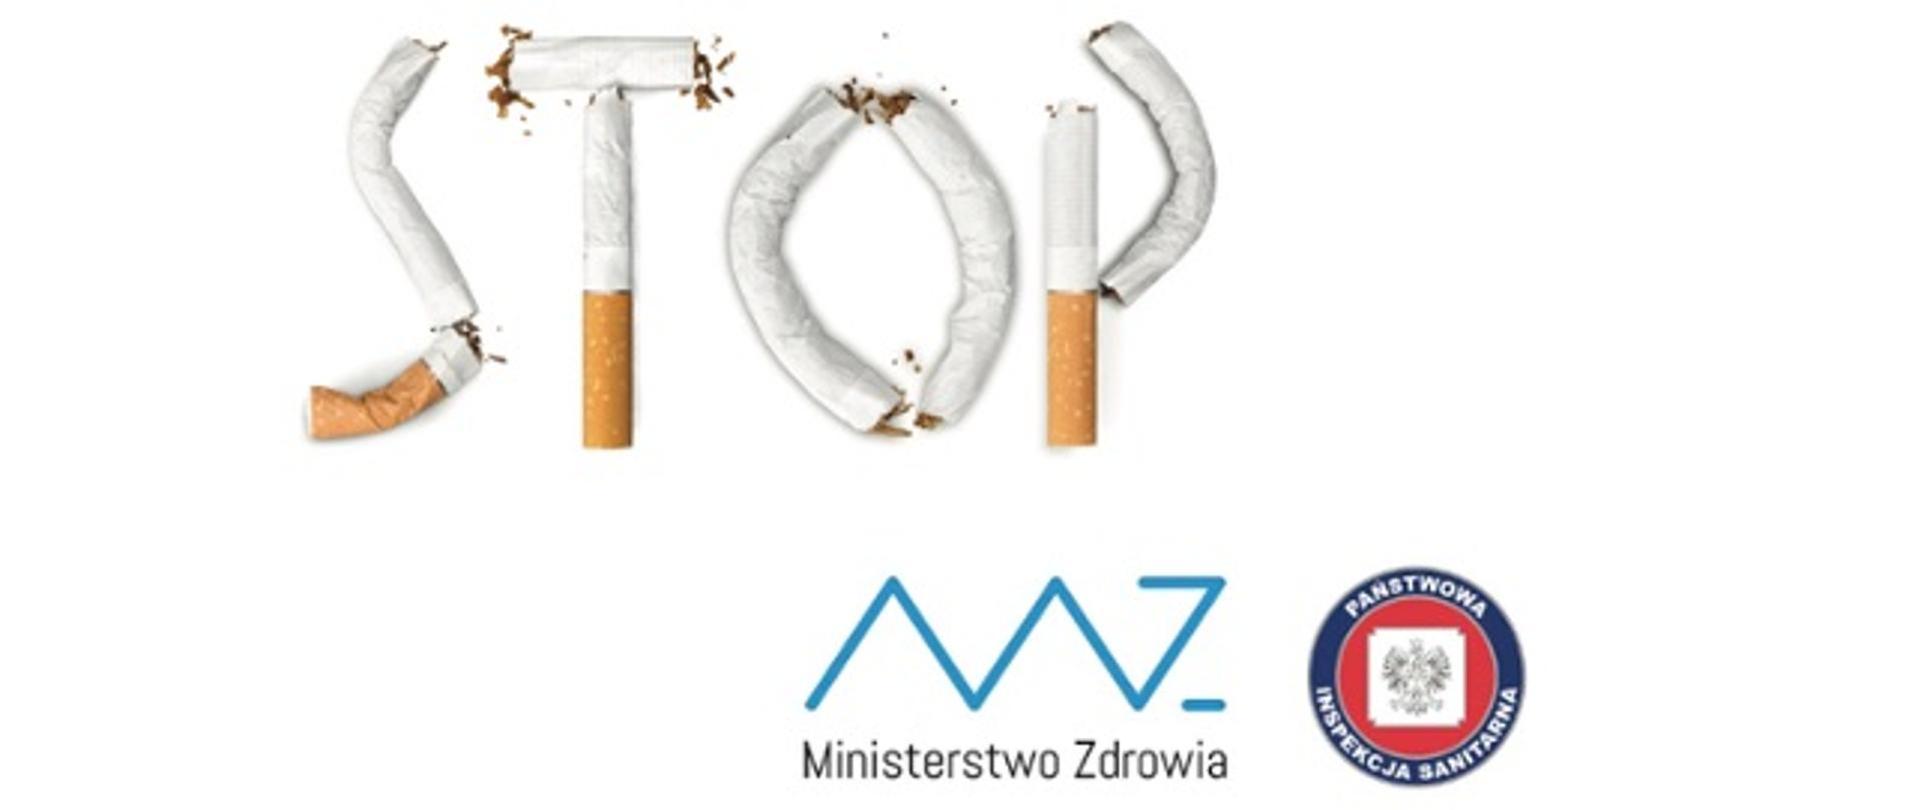 Obraz przedstawia napis STOP z ułożonych papierosów oraz logotyp Ministerstwa Zdrowia i Państwowej Inspekcji Sanitarnej